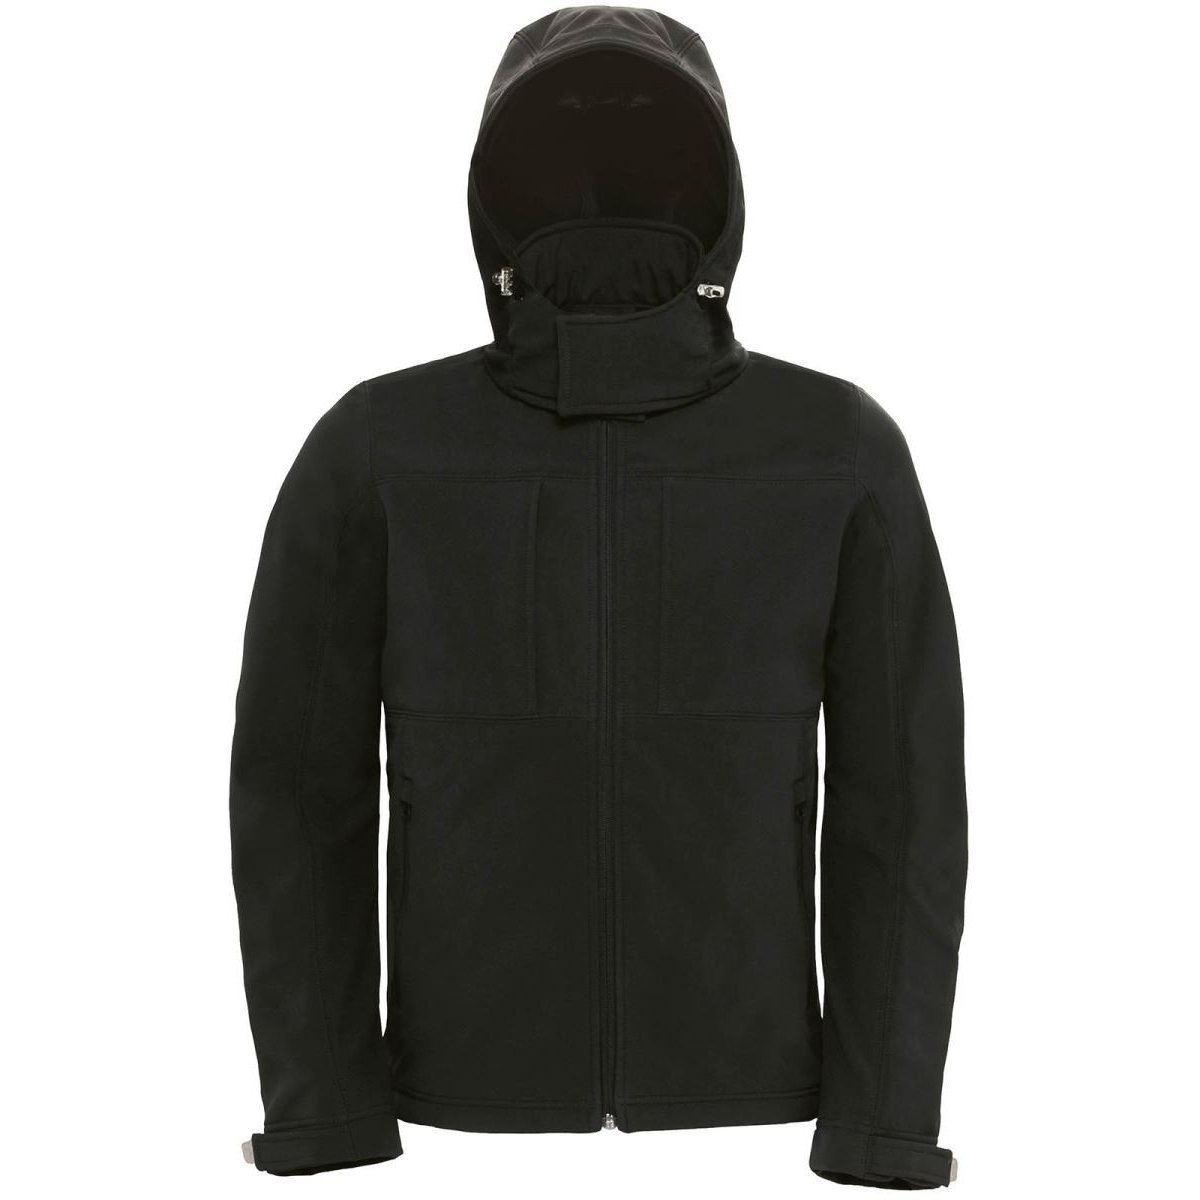 Pánská softshellová bunda s kapucí B&C Hooded Softshell - černá, M